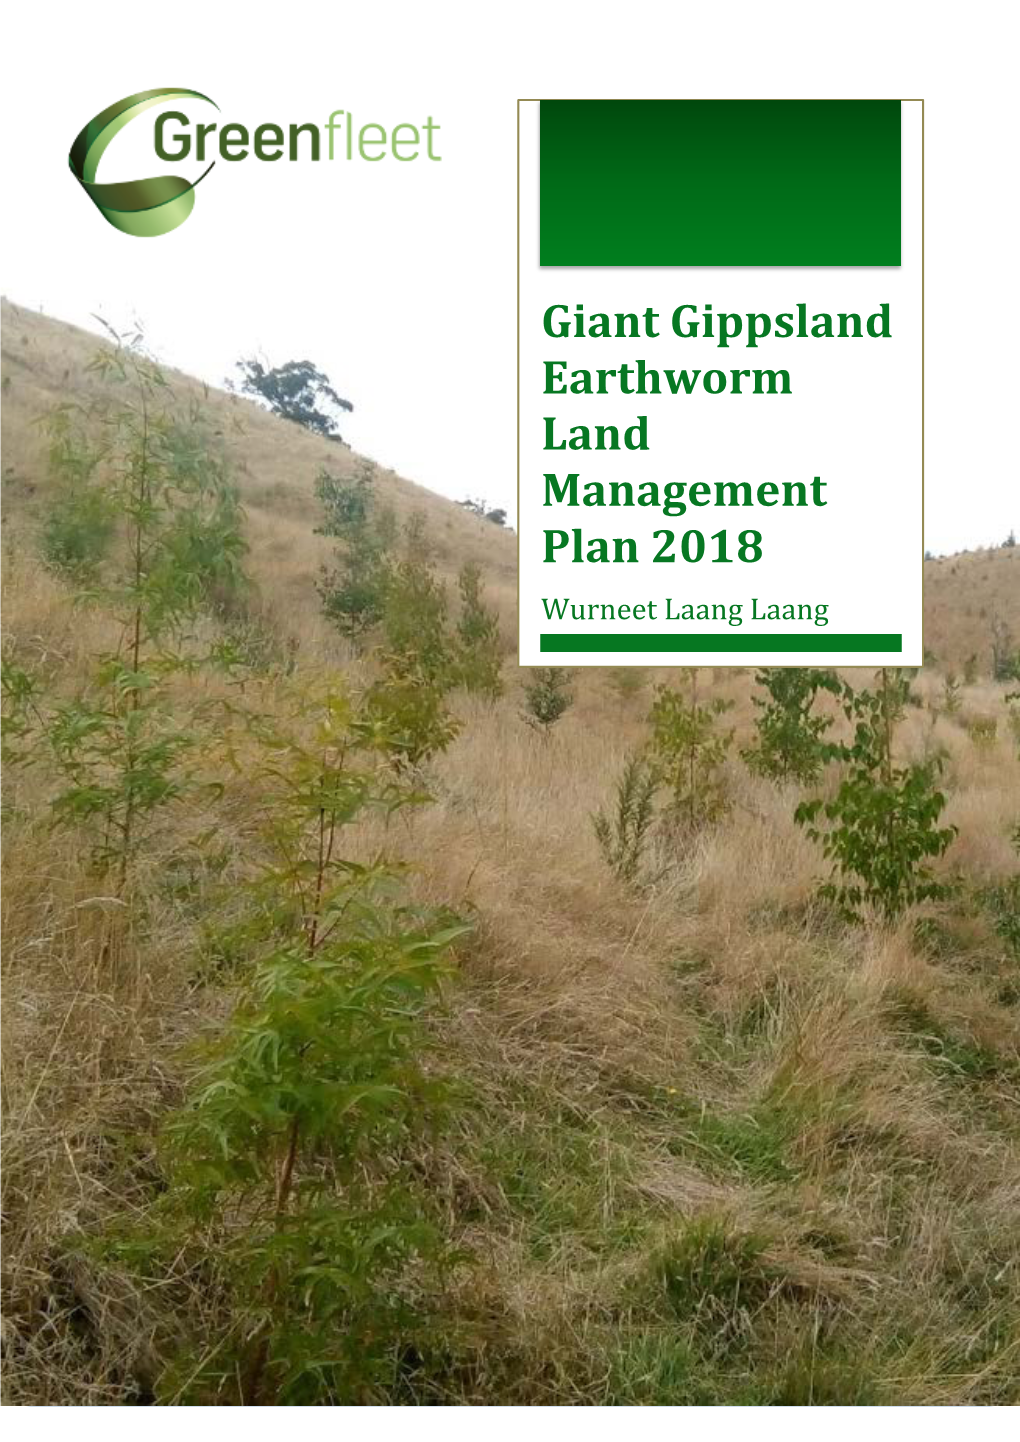 Giant Gippsland Earthworm Land Management Plan 2018 Wurneet Laang Laang